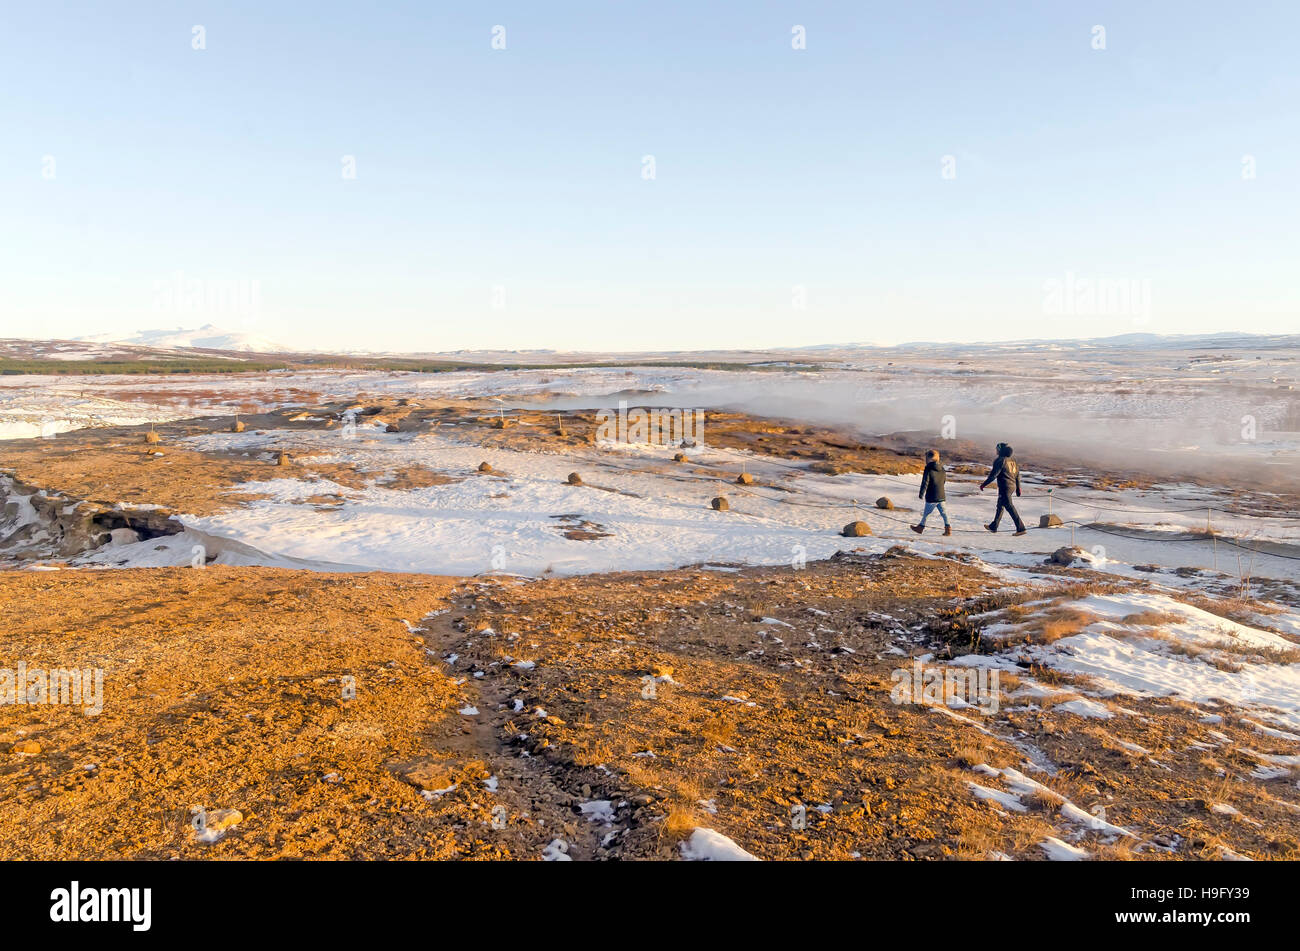 Visite du cercle d'or en Islande deux promenades à travers la zone géothermique de Geysir Hot Spring, site touristique Islande attraction hiver neige Banque D'Images